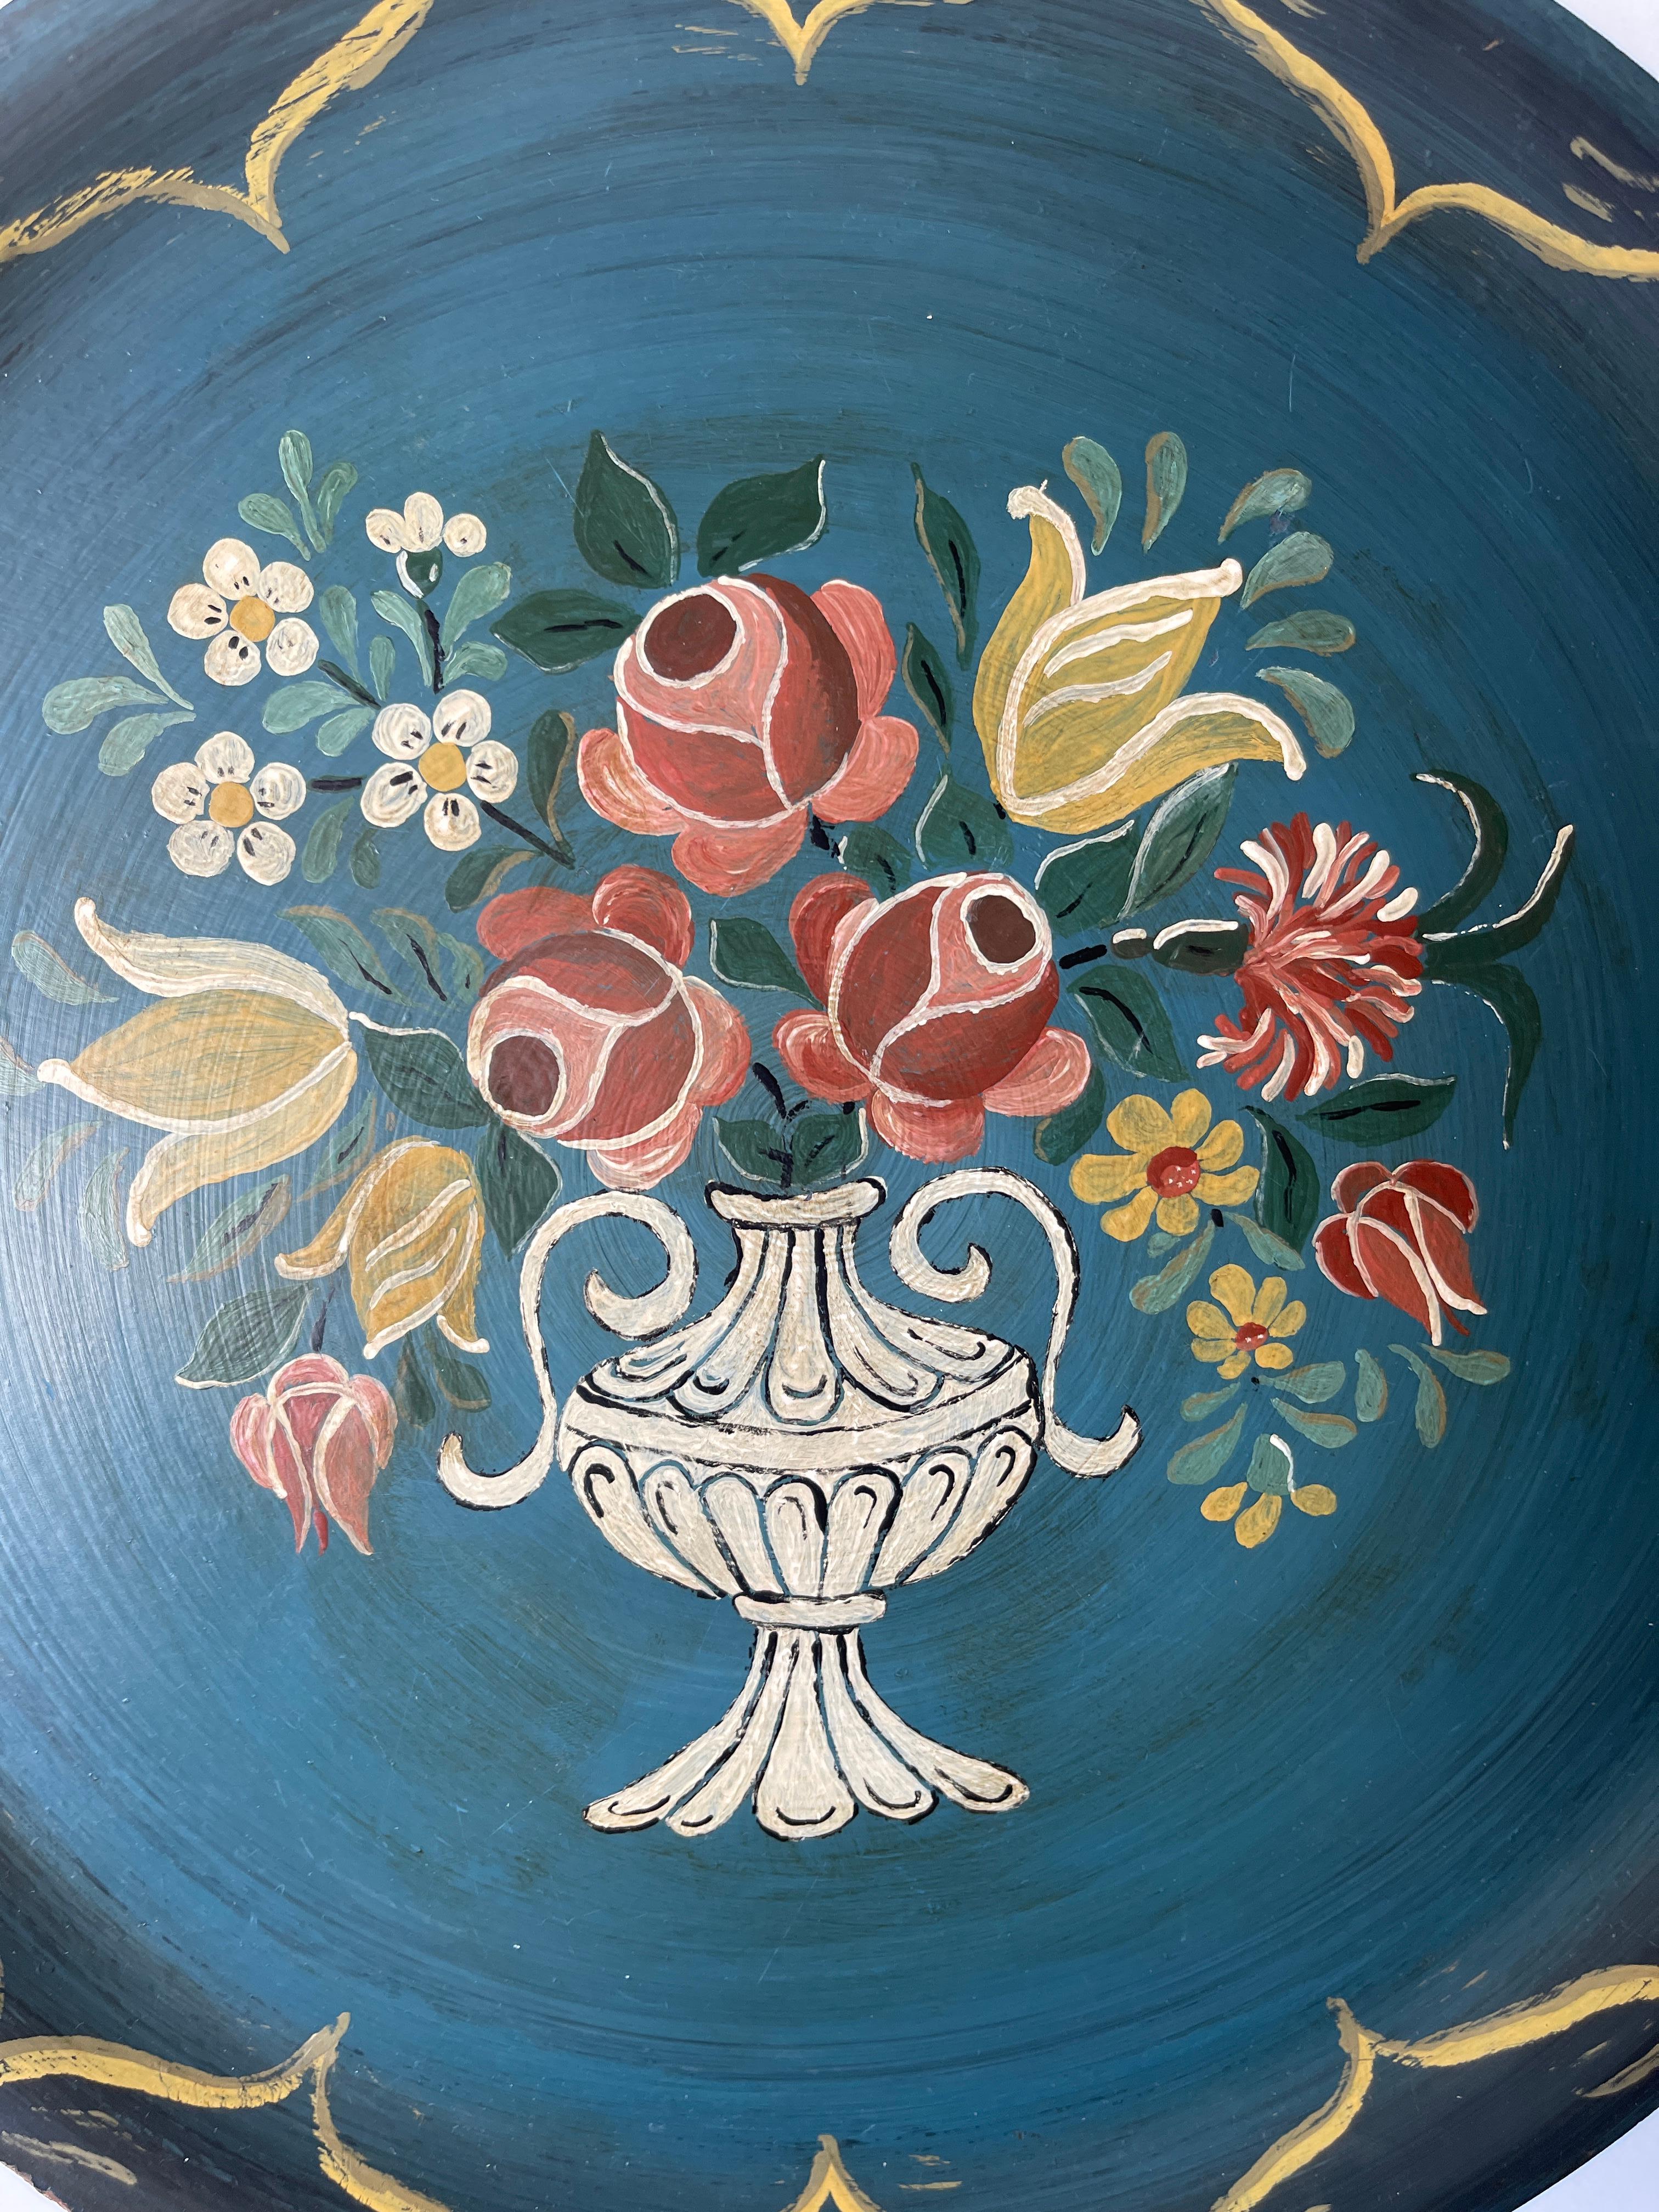 Merveilleux plateau circulaire en teck de l'art populaire suédois avec un bouquet floral peint à la main dans un motif d'urne sur la partie supérieure. Teck à ruban naturel sur la face inférieure.